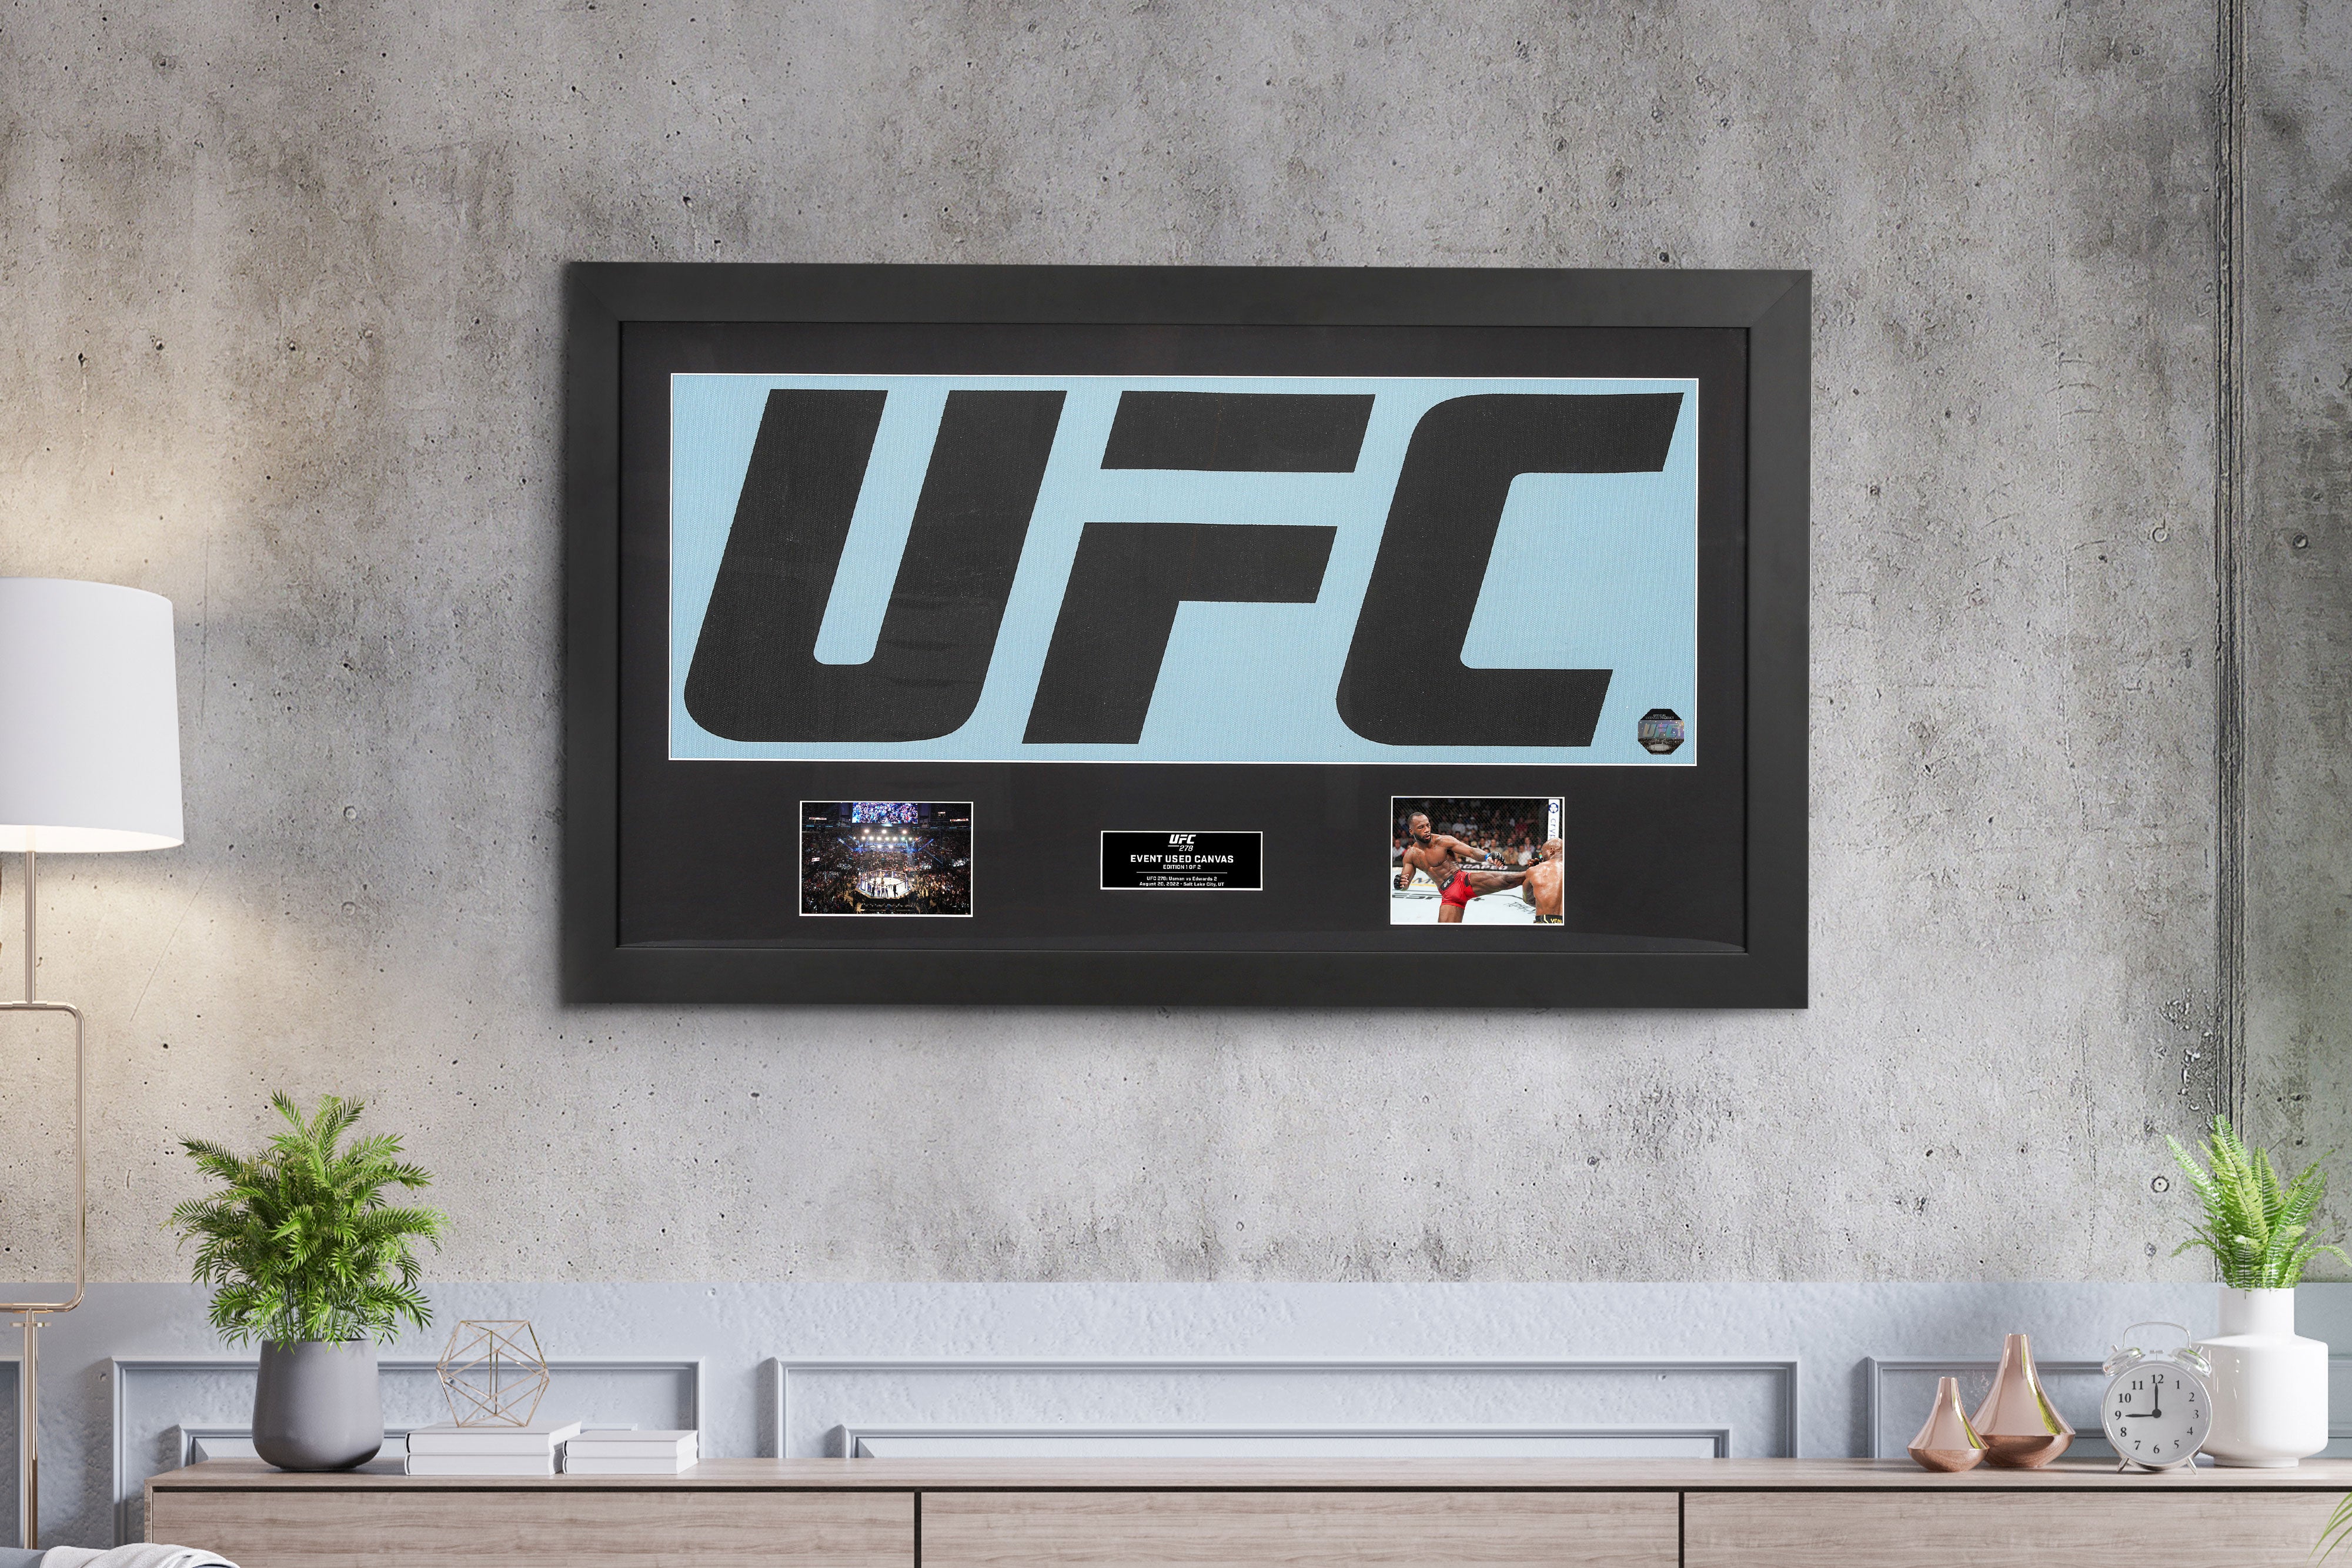 UFC 278: Usman vs Edwards 2 UFC Logo Canvas & Photo